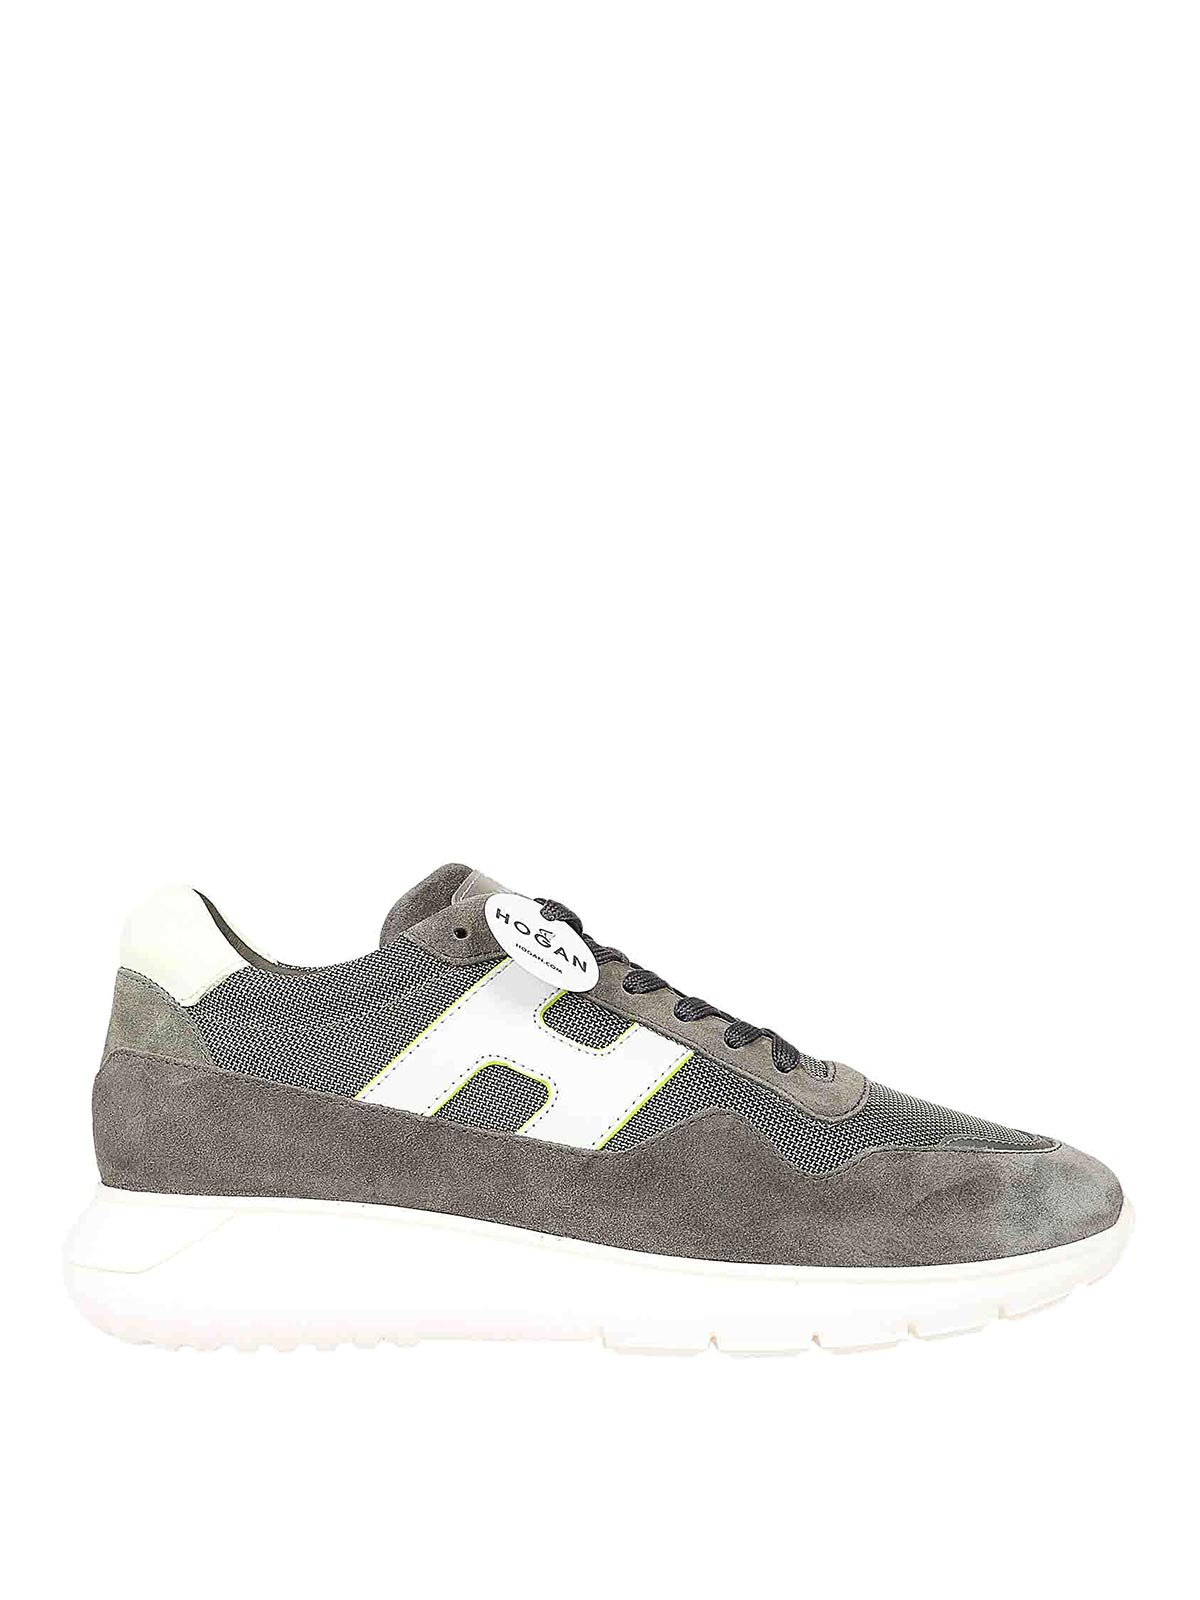 Hogan H371 Sneakers In Gray